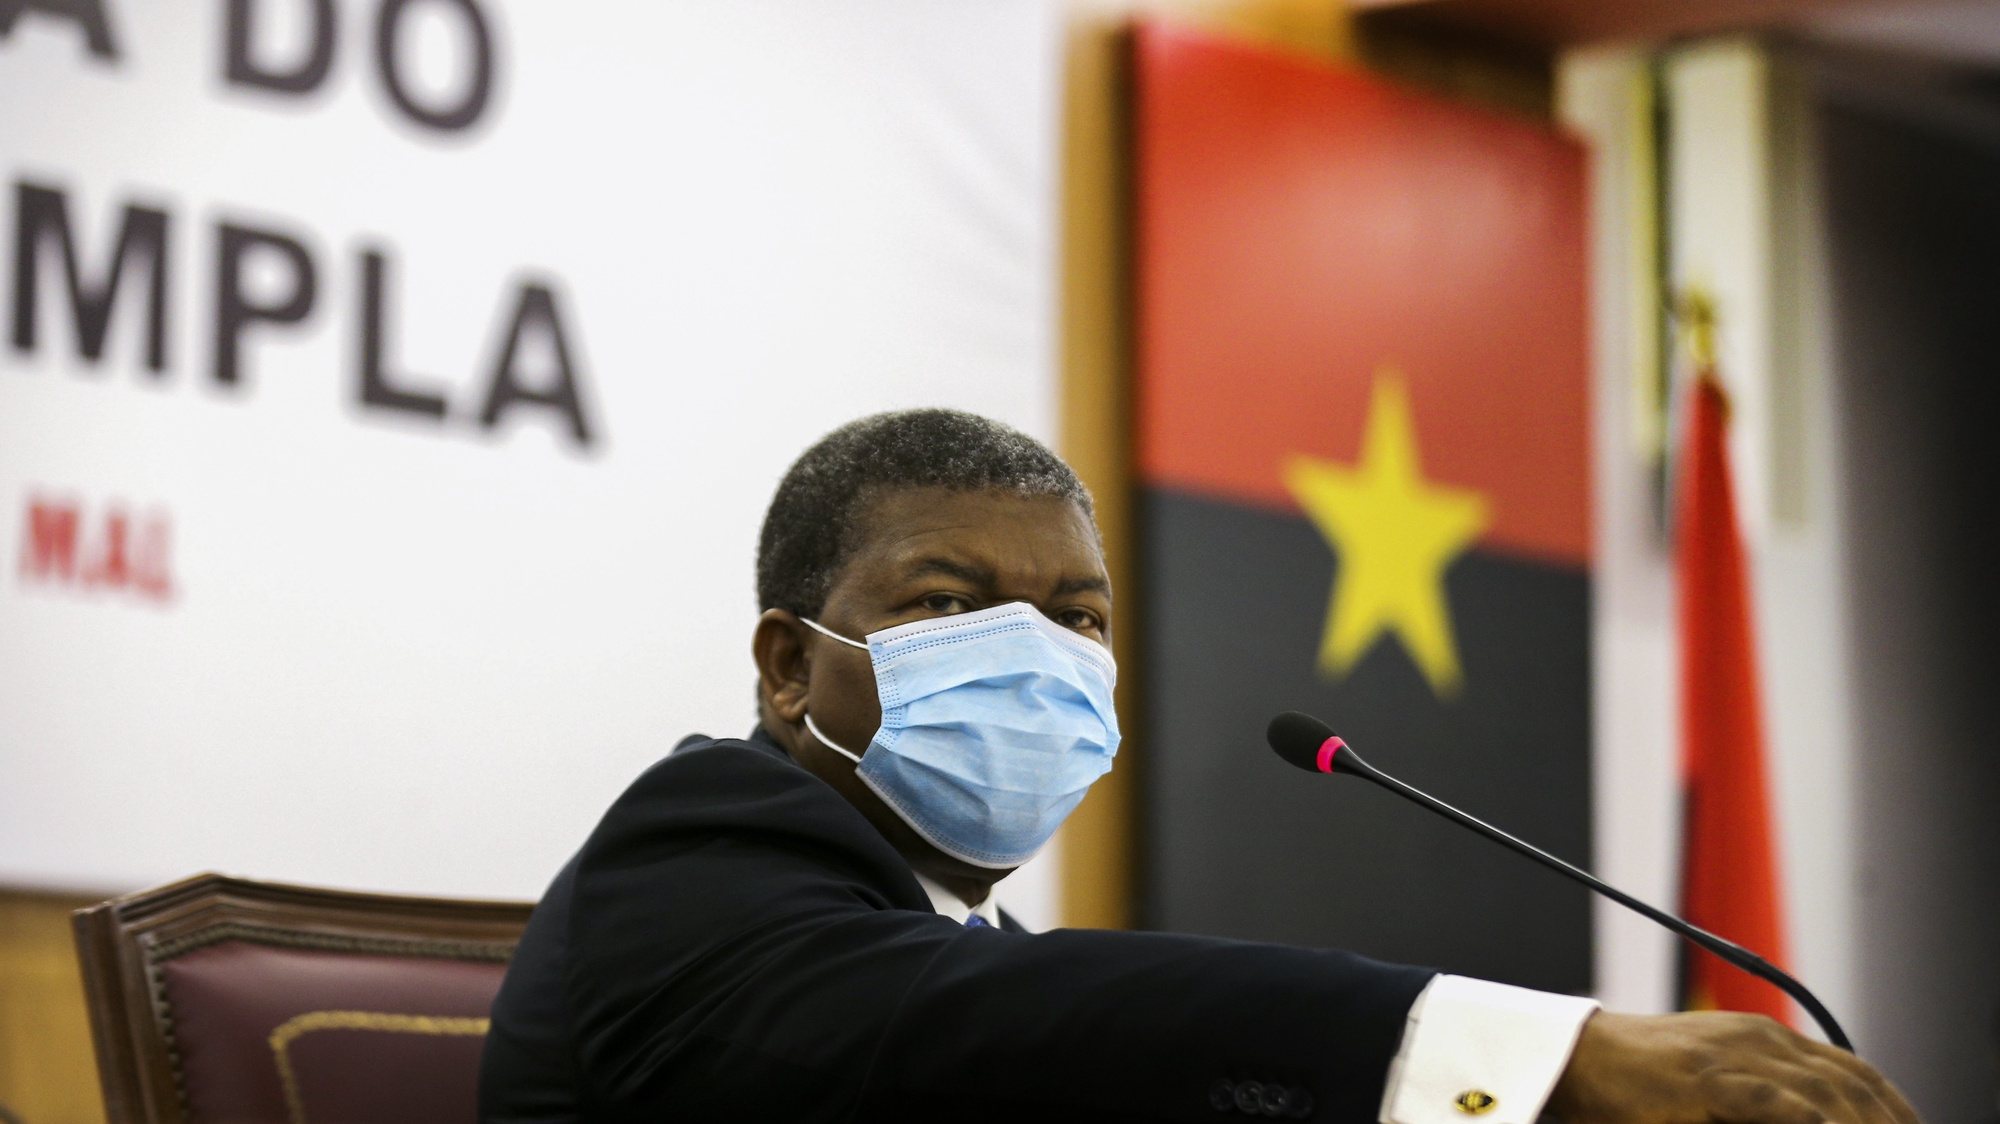 O Presidente da República de Angola, João Lourenço, preside à 1.ª Reunião Ordinária do Bureau Politico do Movimento Popular de Libertação de Angola (MPLA), em Luanda Angola, 22 de janeiro de 2021. AMPE ROGÉRIO/LUSA